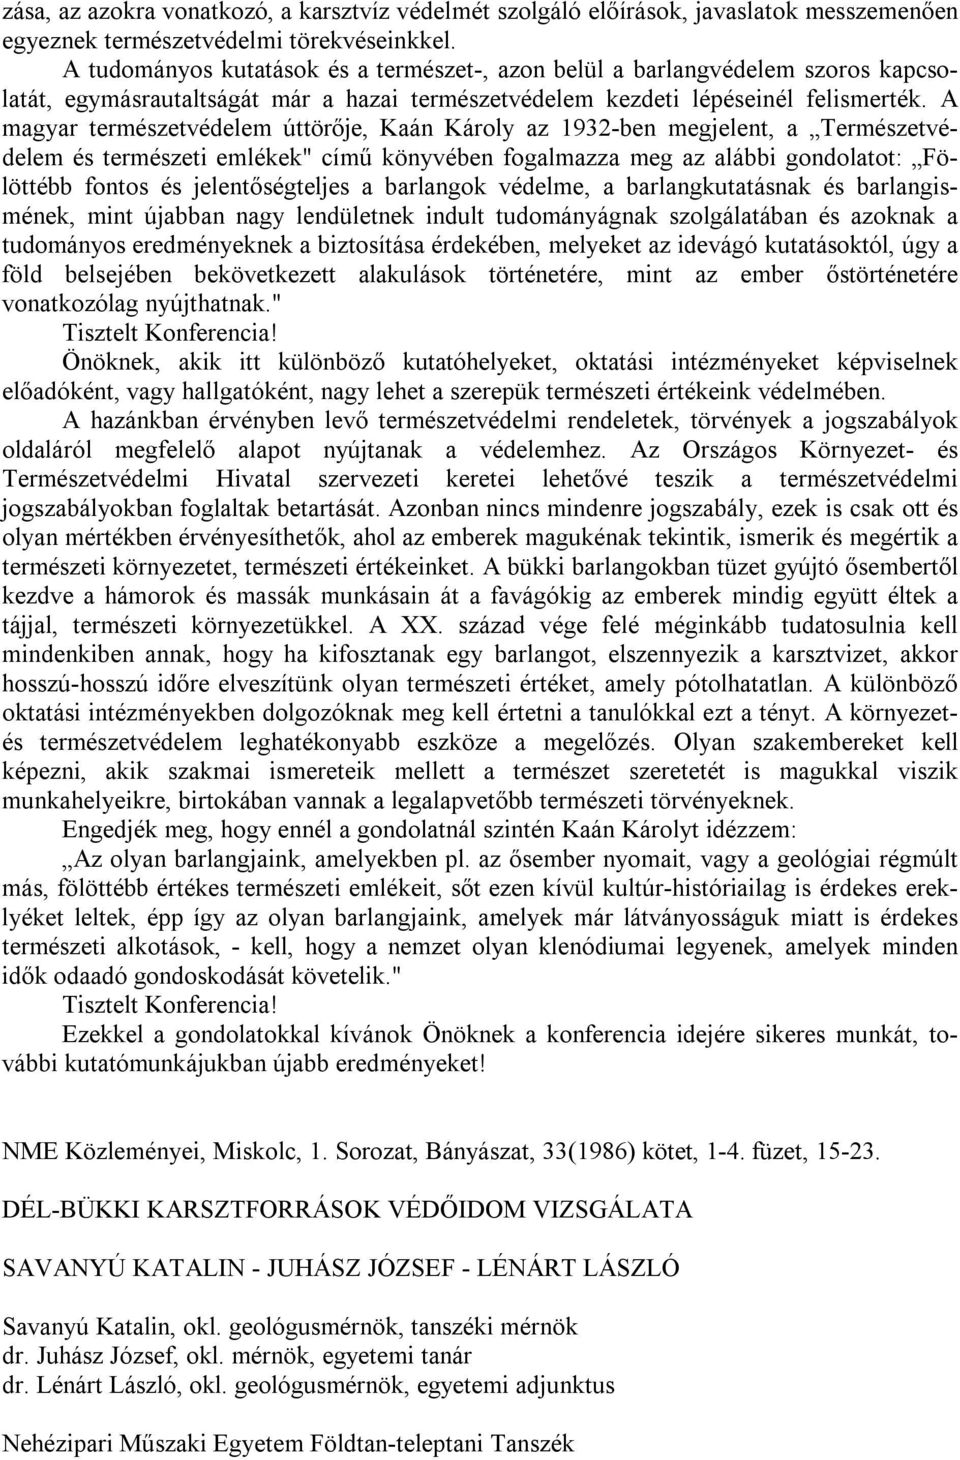 A magyar természetvédelem úttörője, Kaán Károly az 1932-ben megjelent, a Természetvédelem és természeti emlékek" című könyvében fogalmazza meg az alábbi gondolatot: Fölöttébb fontos és